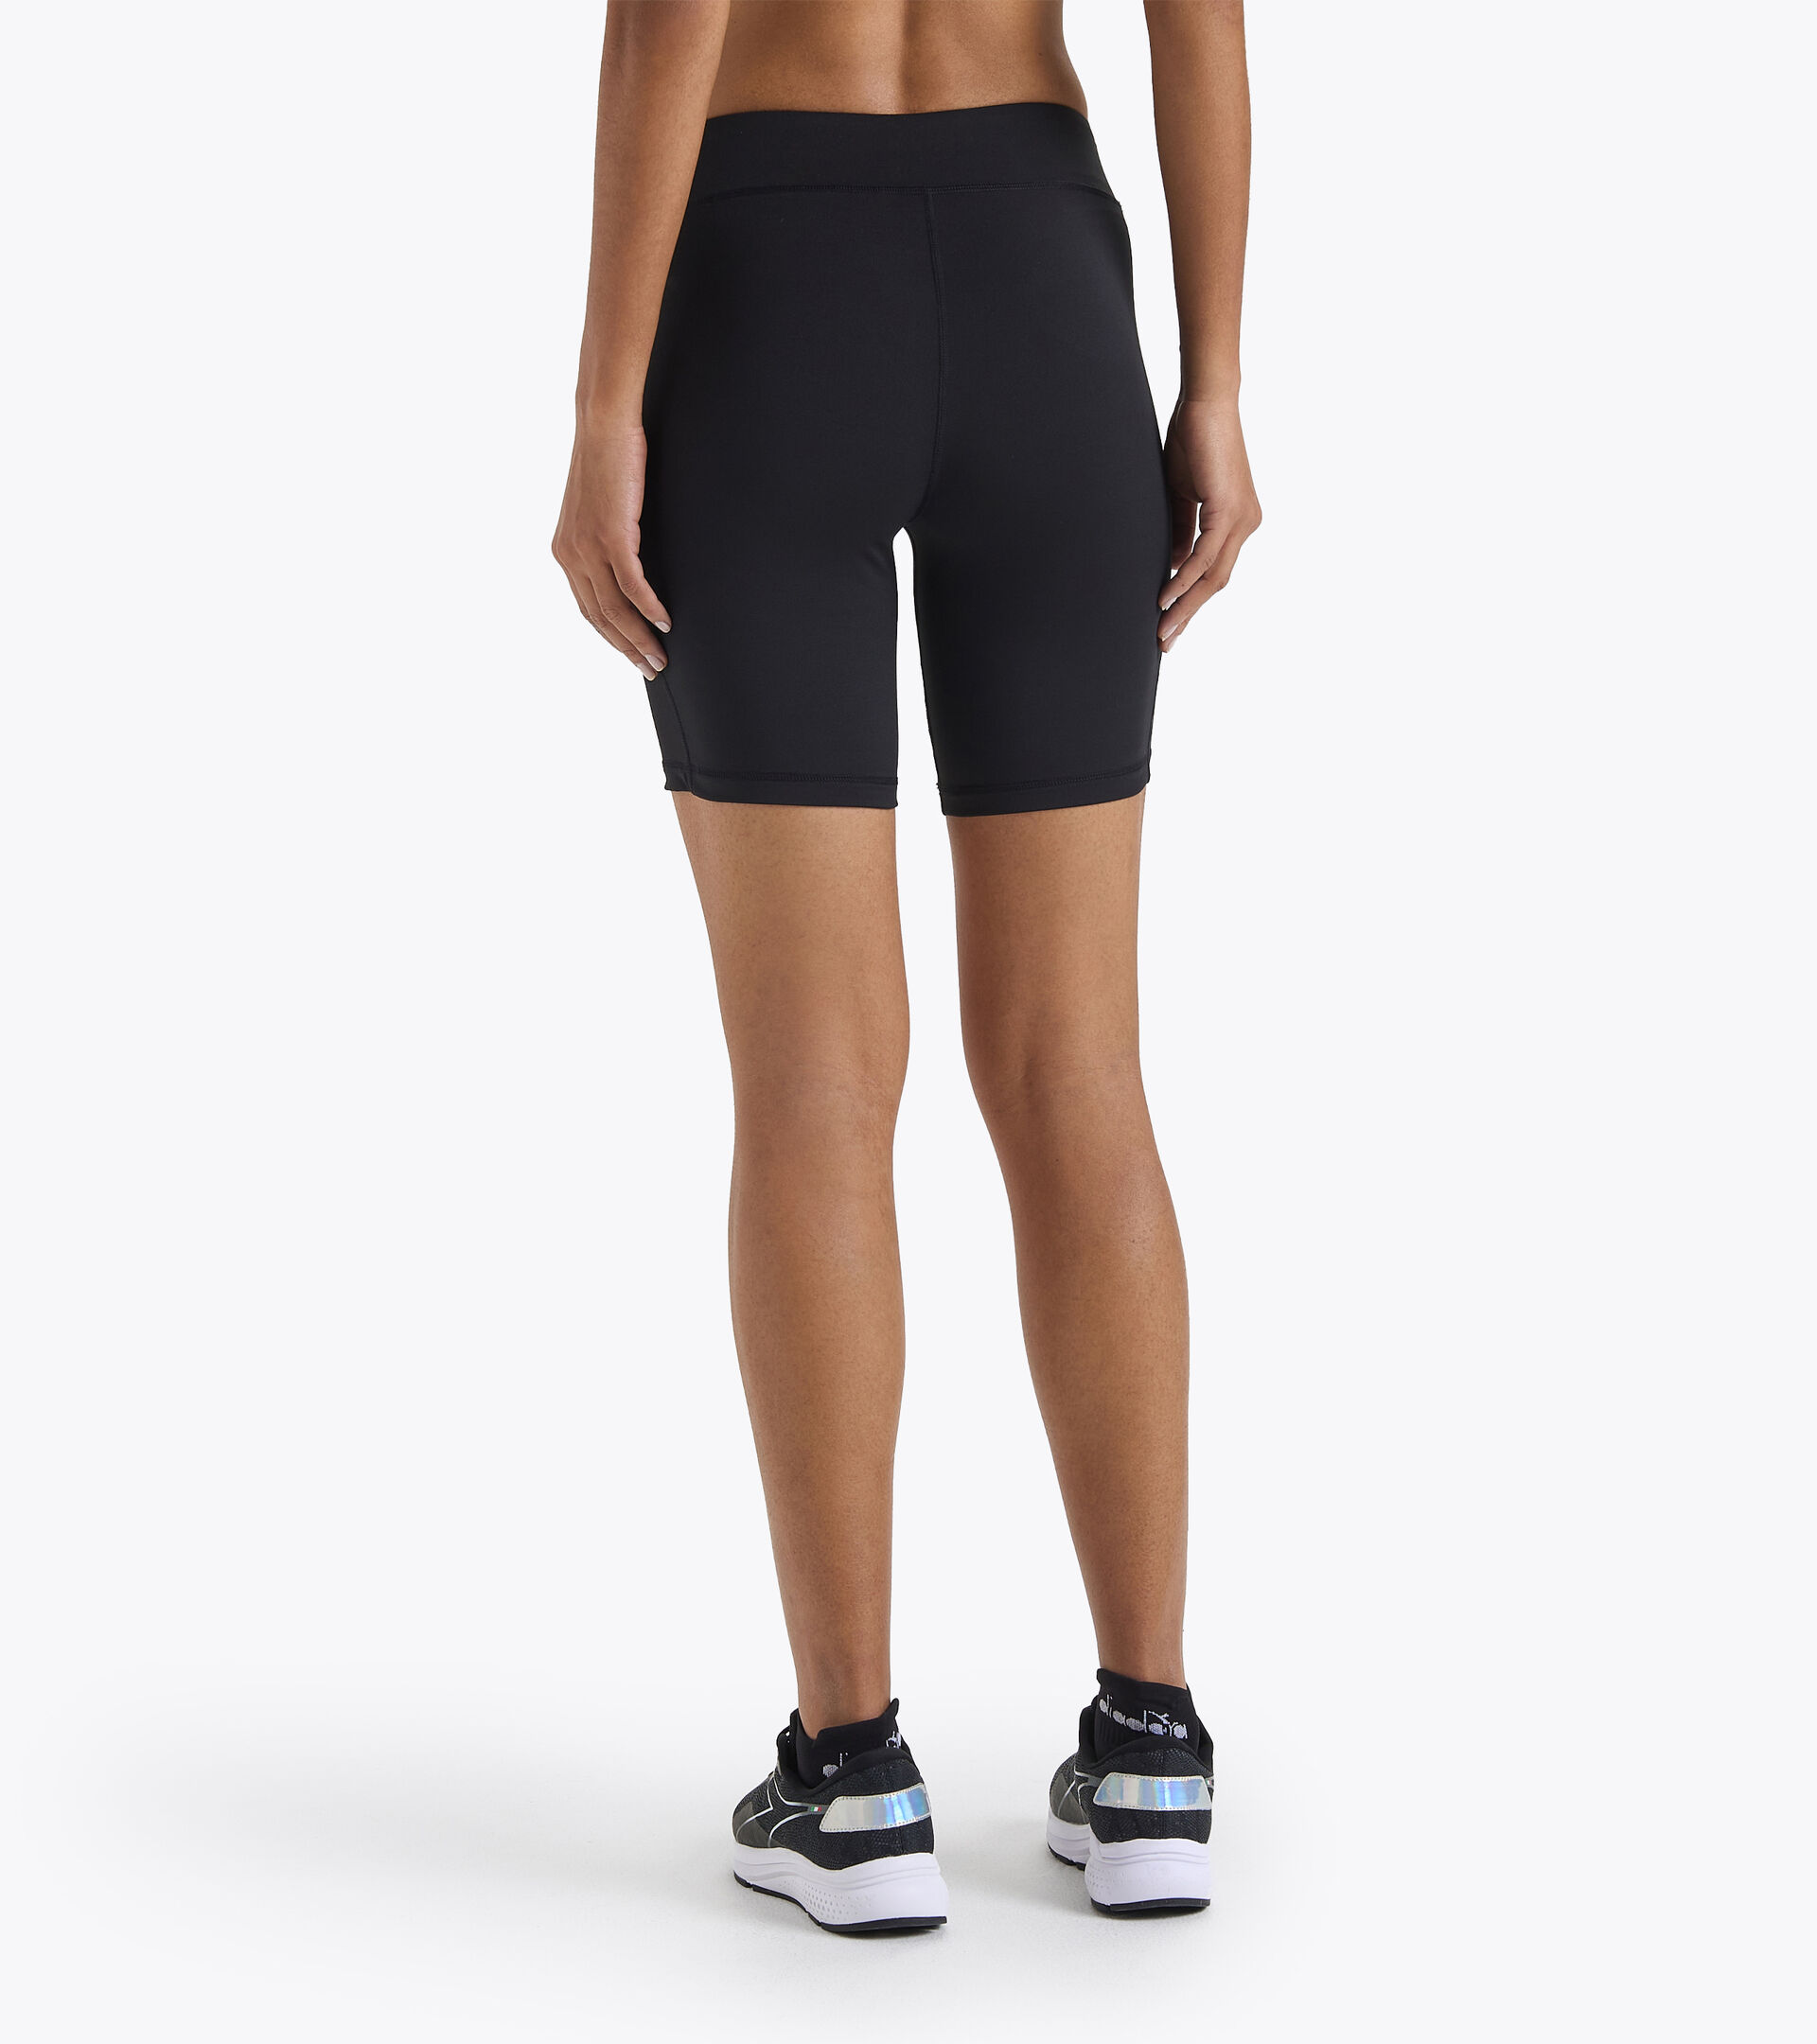 Shorts para correr - Mujer L. SHORT TIGHTS NEGRO - Diadora